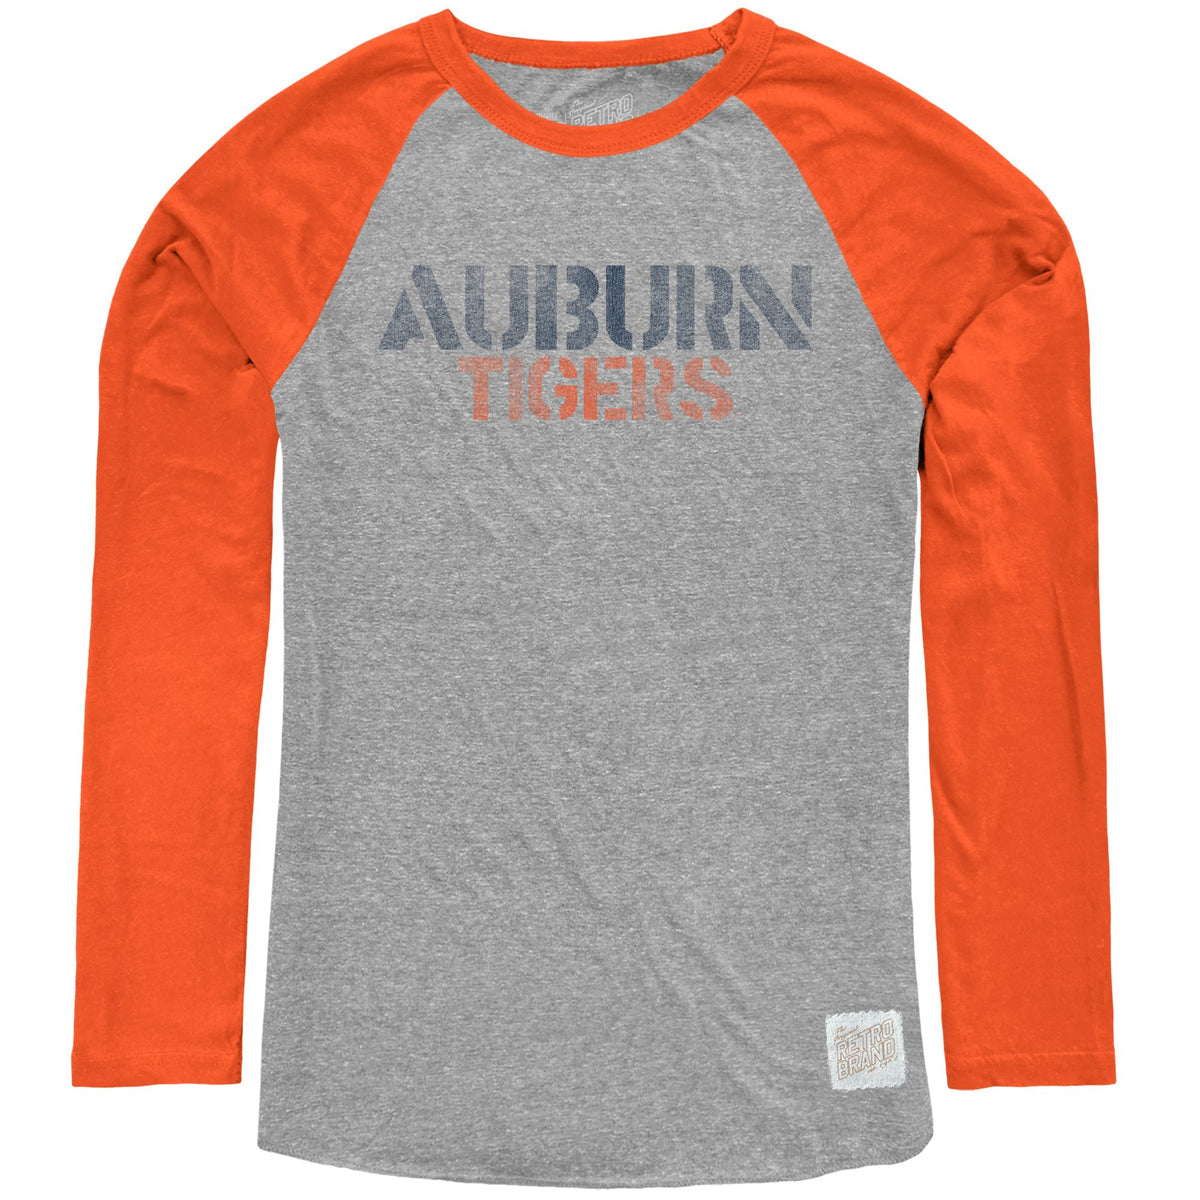 Auburn Tigers Tri-Blend Contrast Raglan